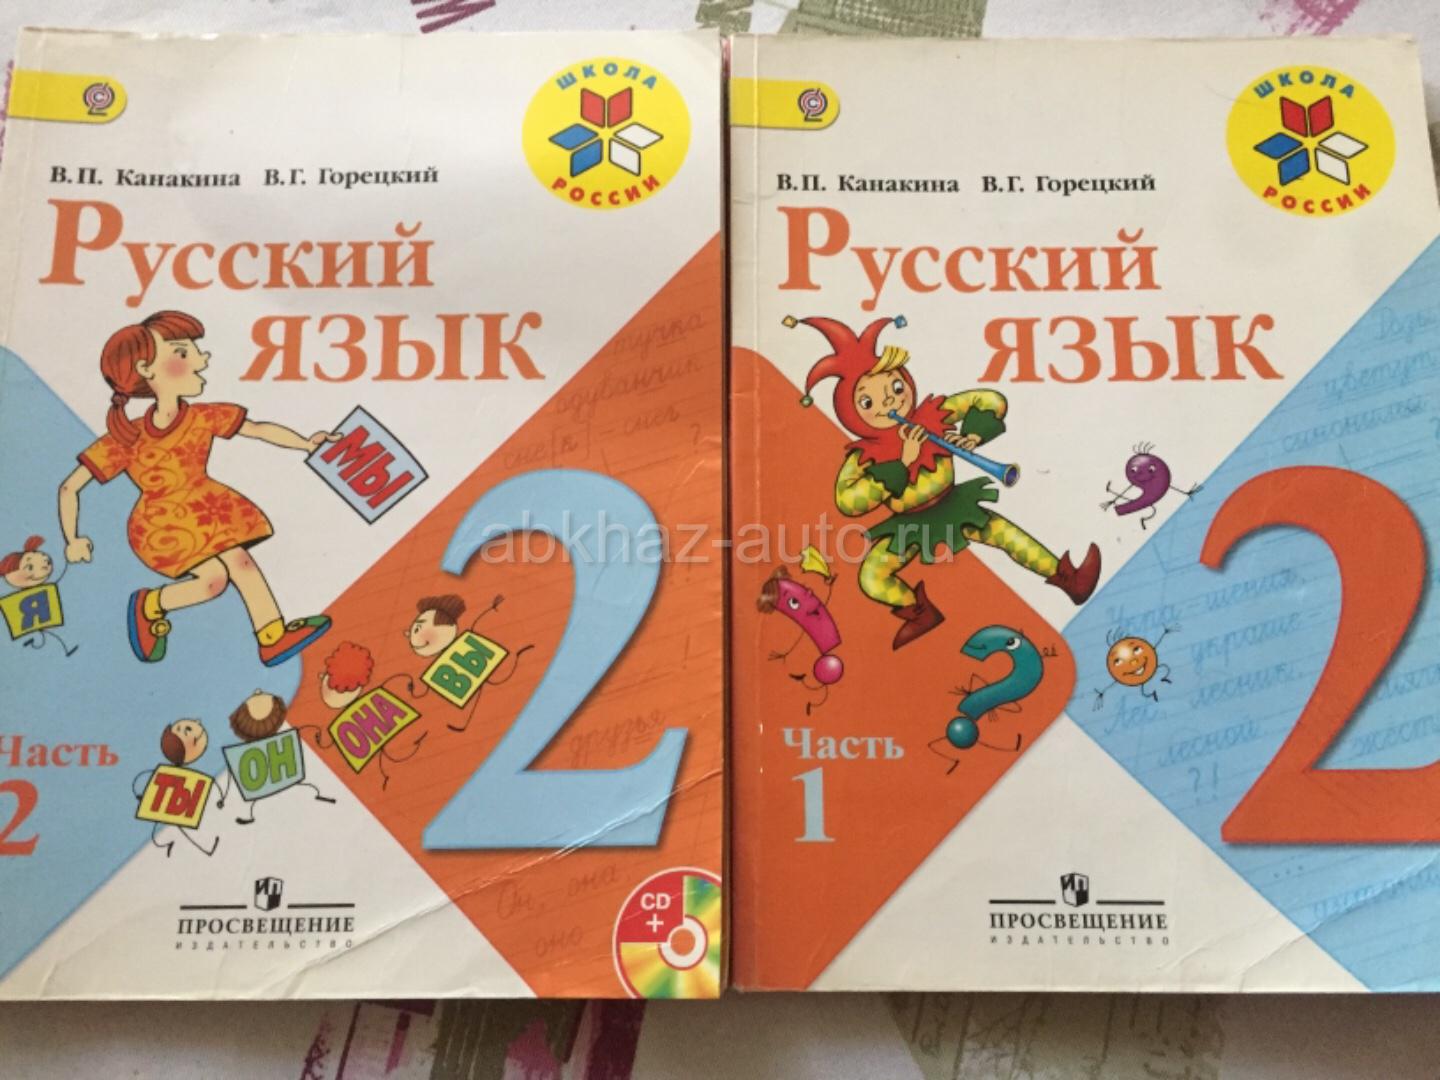 Гдз решебник по русскому языку 3 класс канакина, горецкий учебник просвещение